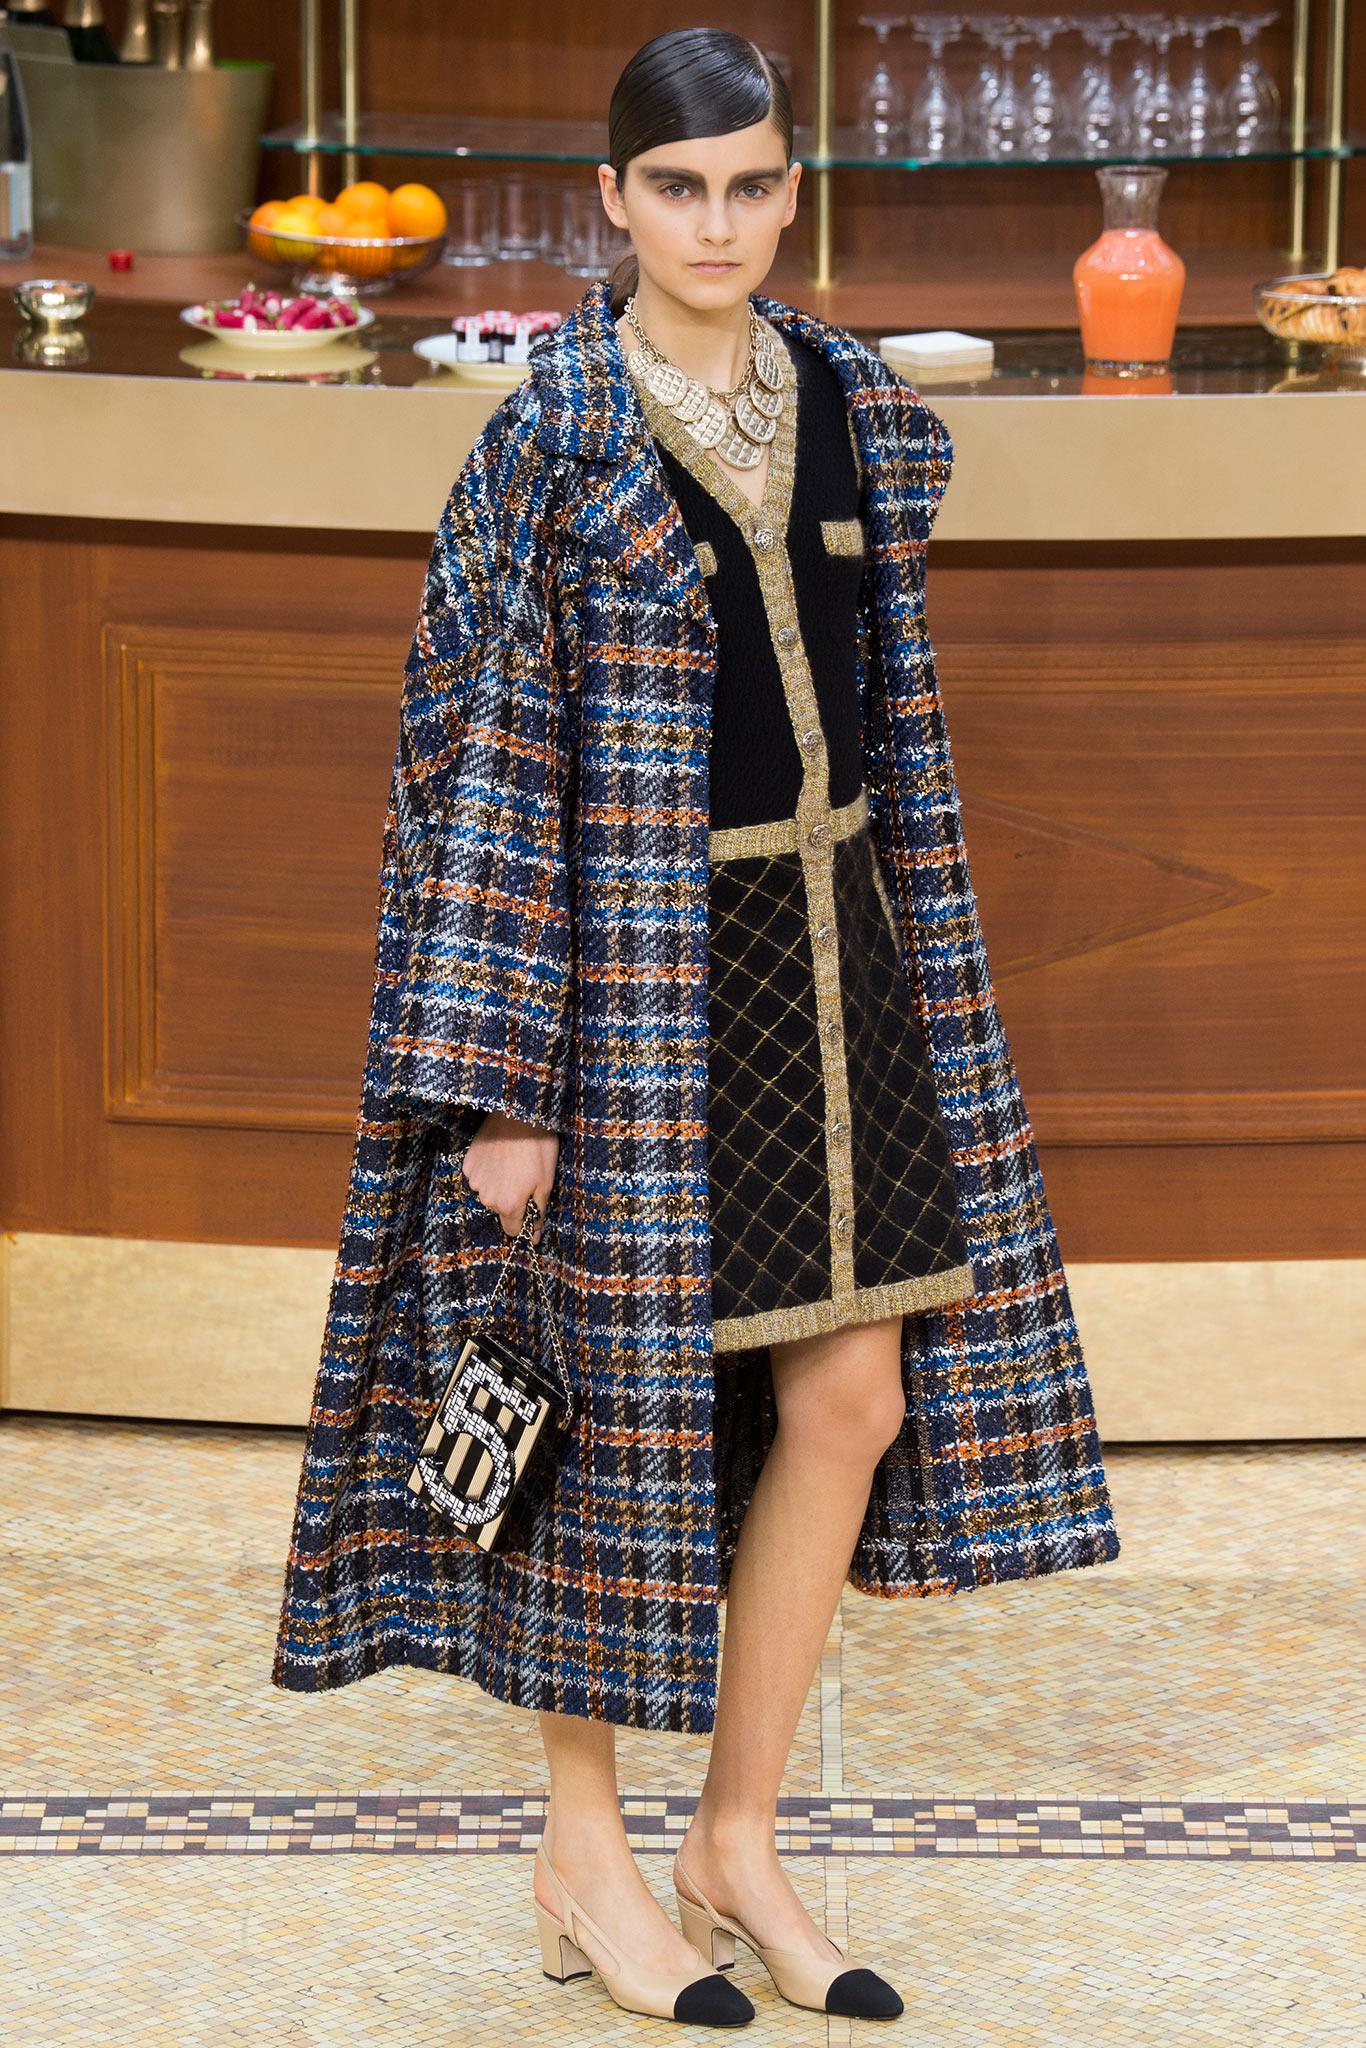 Super berühmte und seltene Chanel Jacke / Kleid aus ''Coco Brasserie'' 2015 Herbst Kollektion, Verkaufspreis 8.870$. Gesehen in der Chanel Werbekampagne, in vielen Magazinen. Ikonisch und wiedererkennbar. 
✨ Kamelienförmige Knöpfe auf der